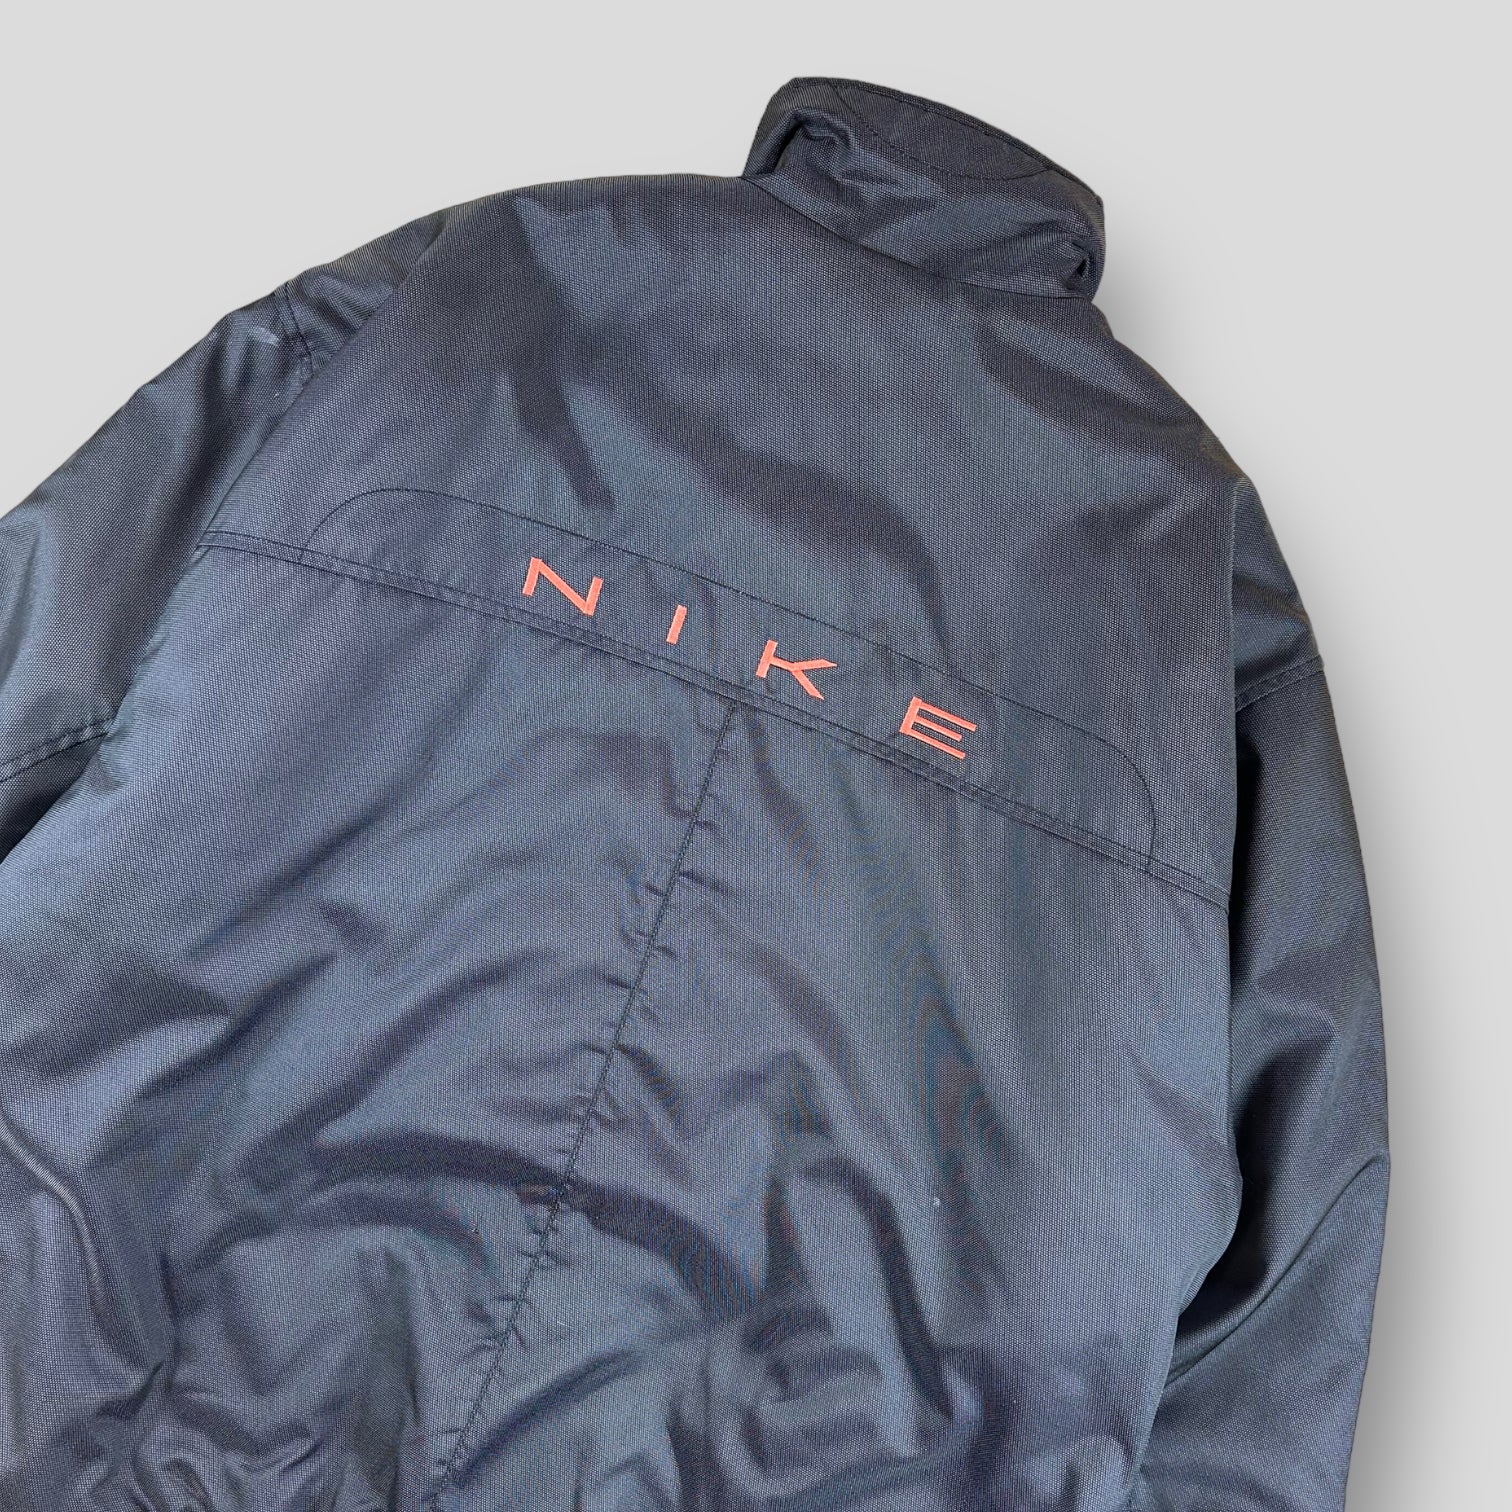 Nike jacket